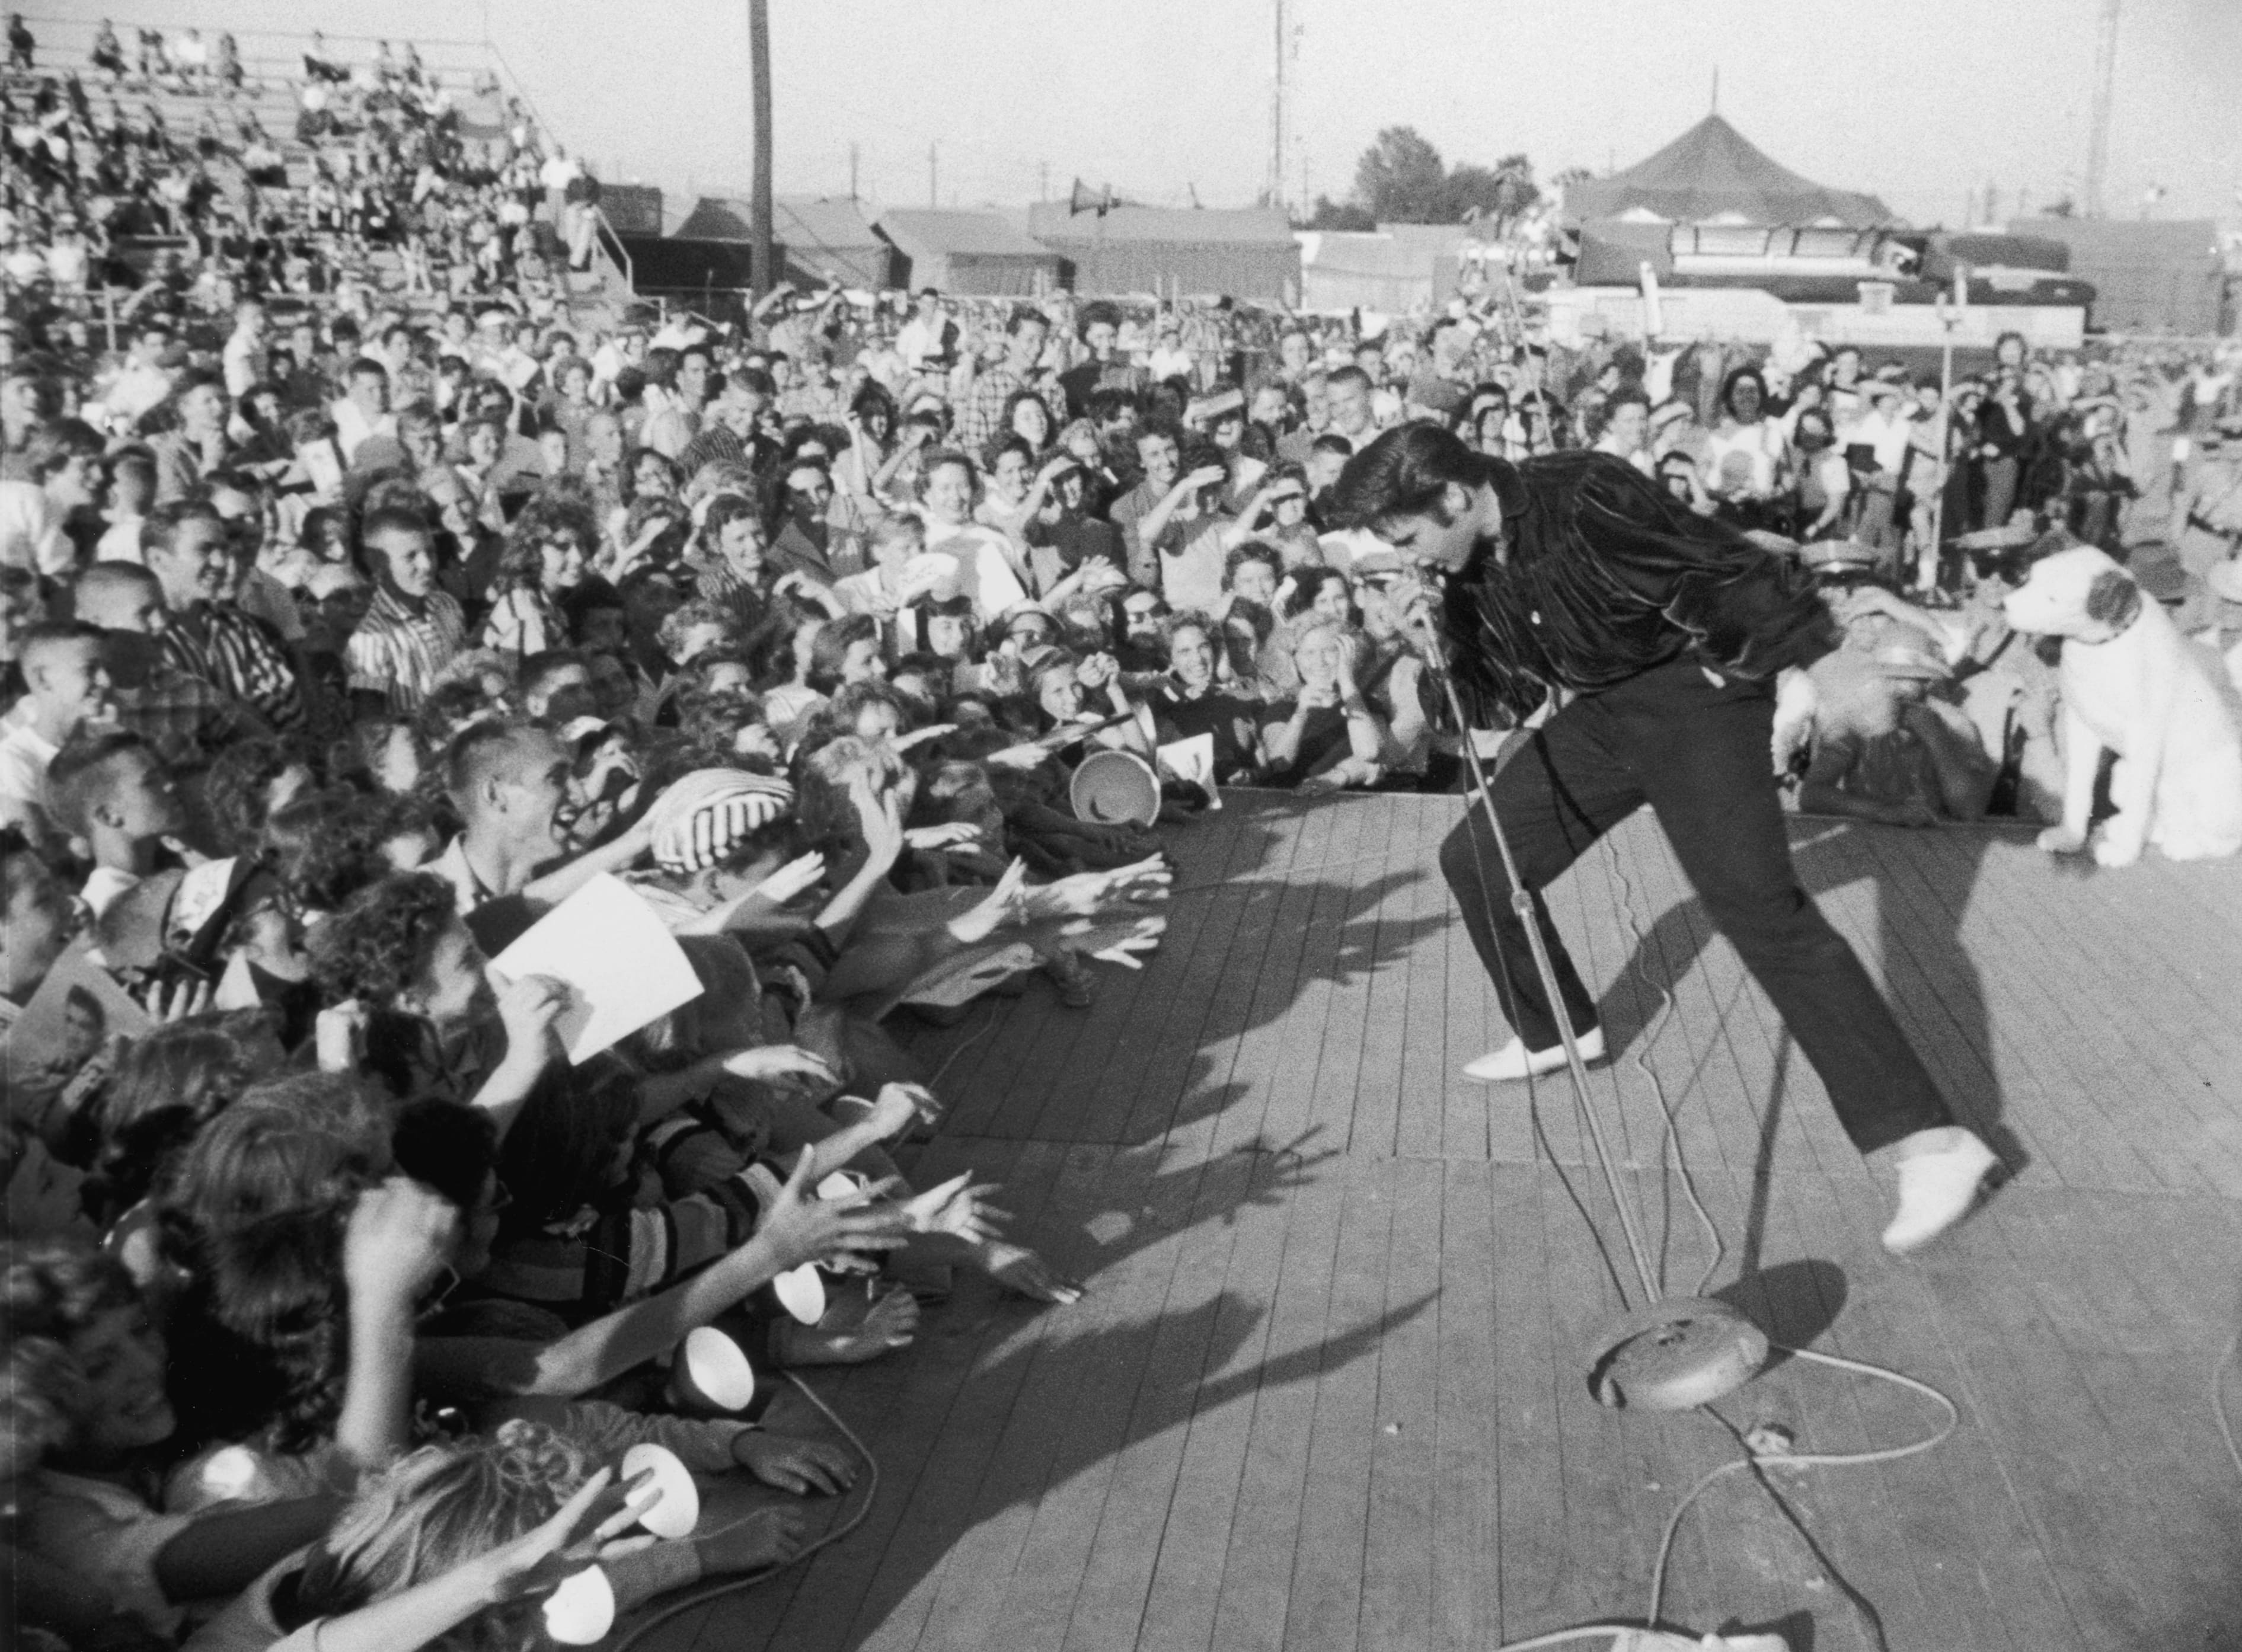 Zum Greifen nah: Fans versuchen ihr Idol Elvis Presley bei einem Konzert zu berühren. Die Aufnahme stammt etwa aus dem Jahr 1957.